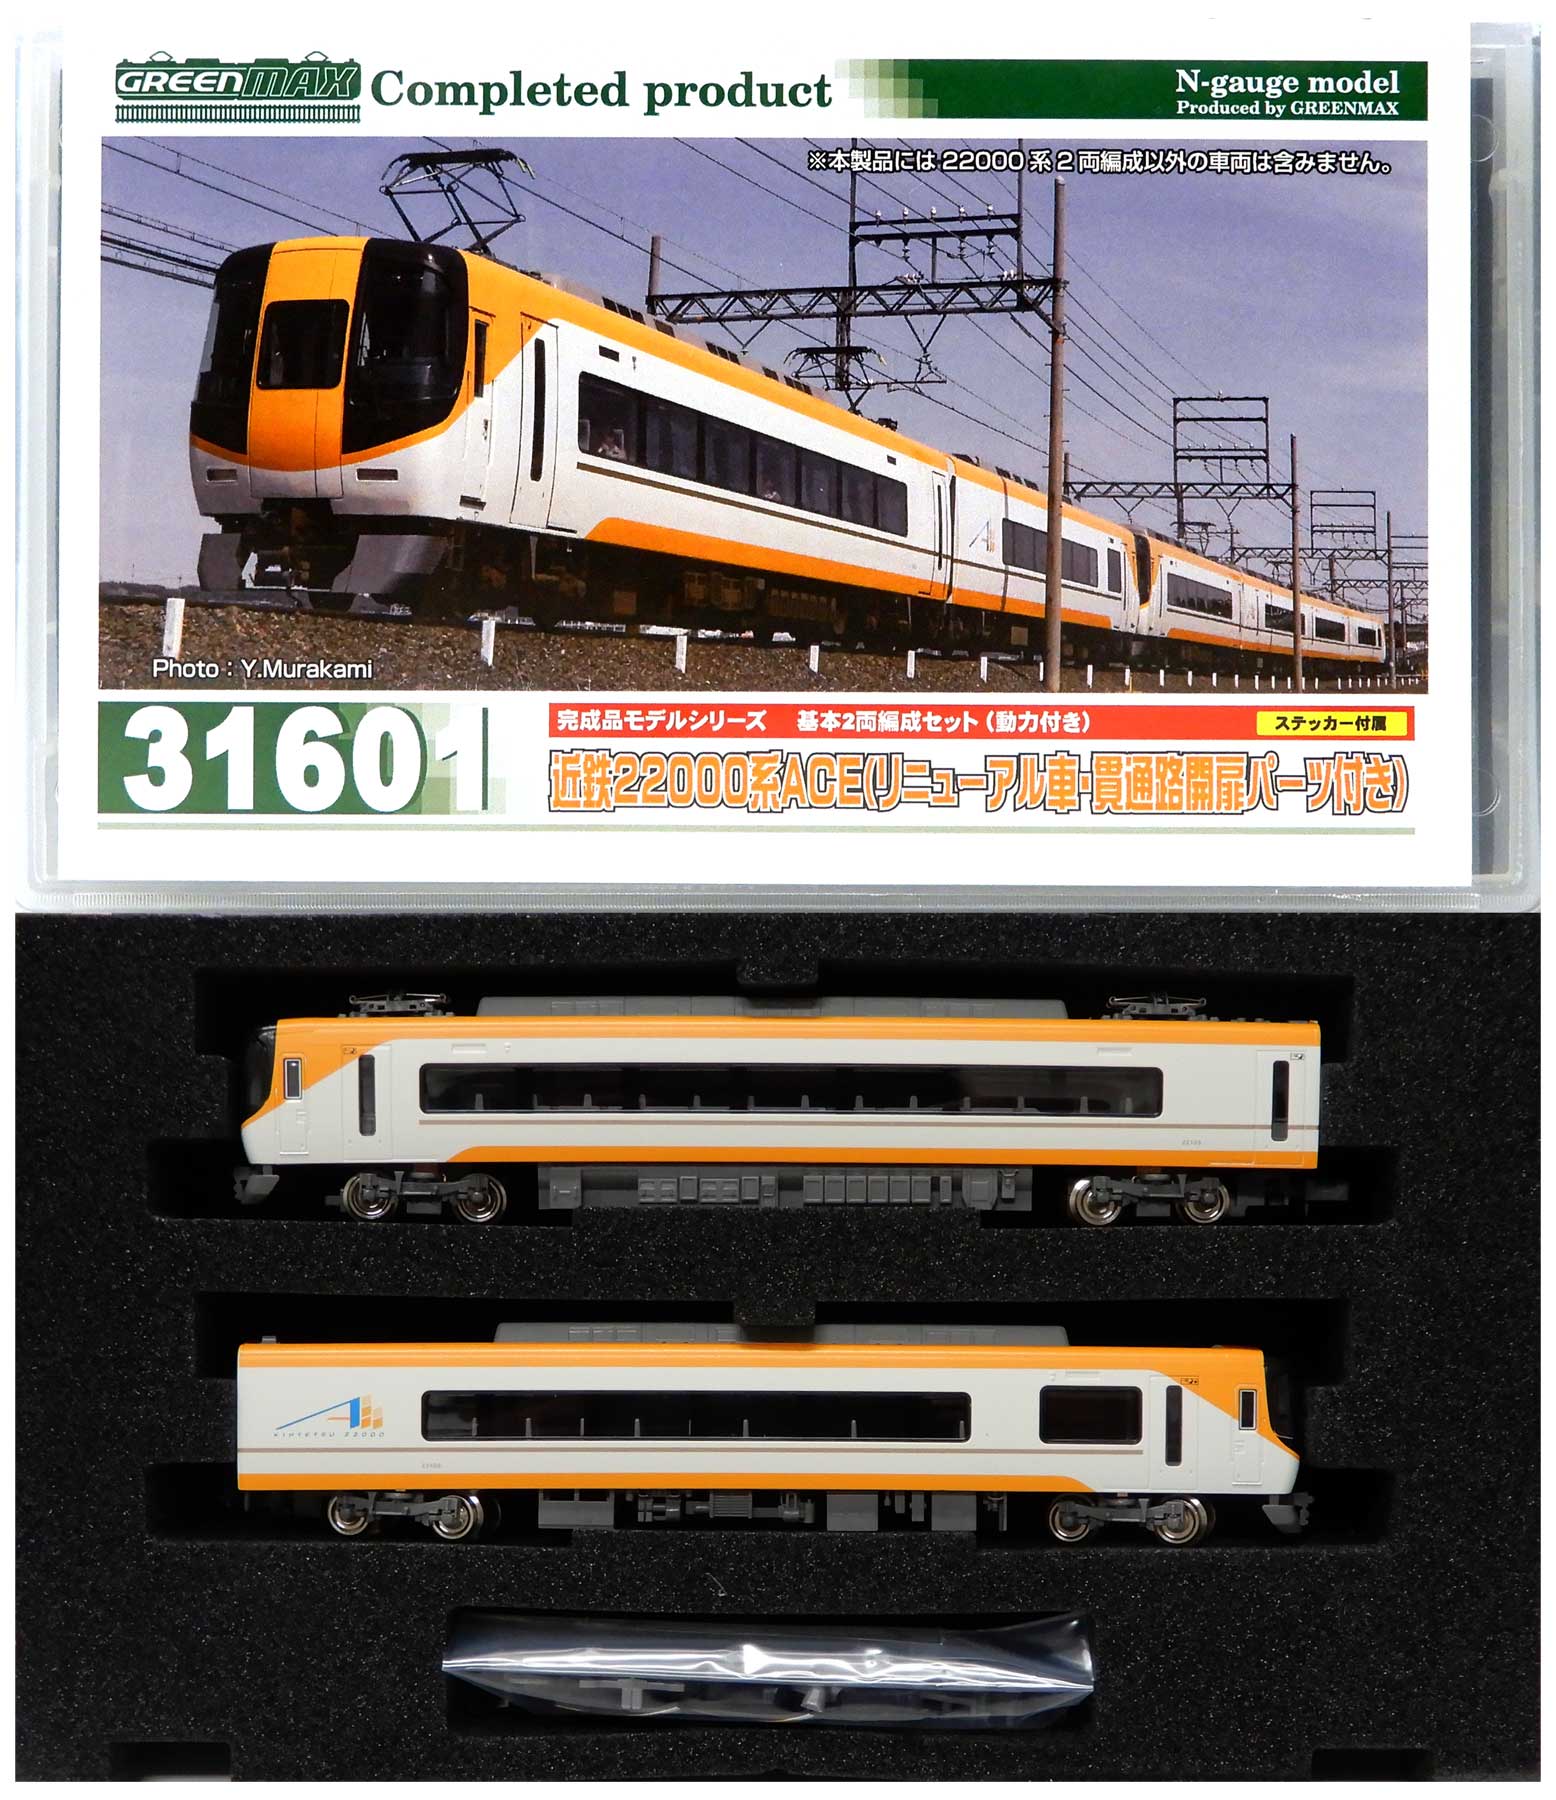 公式]鉄道模型(31601近鉄22000系ACE(リニューアル車・貫通路開扉パーツ 